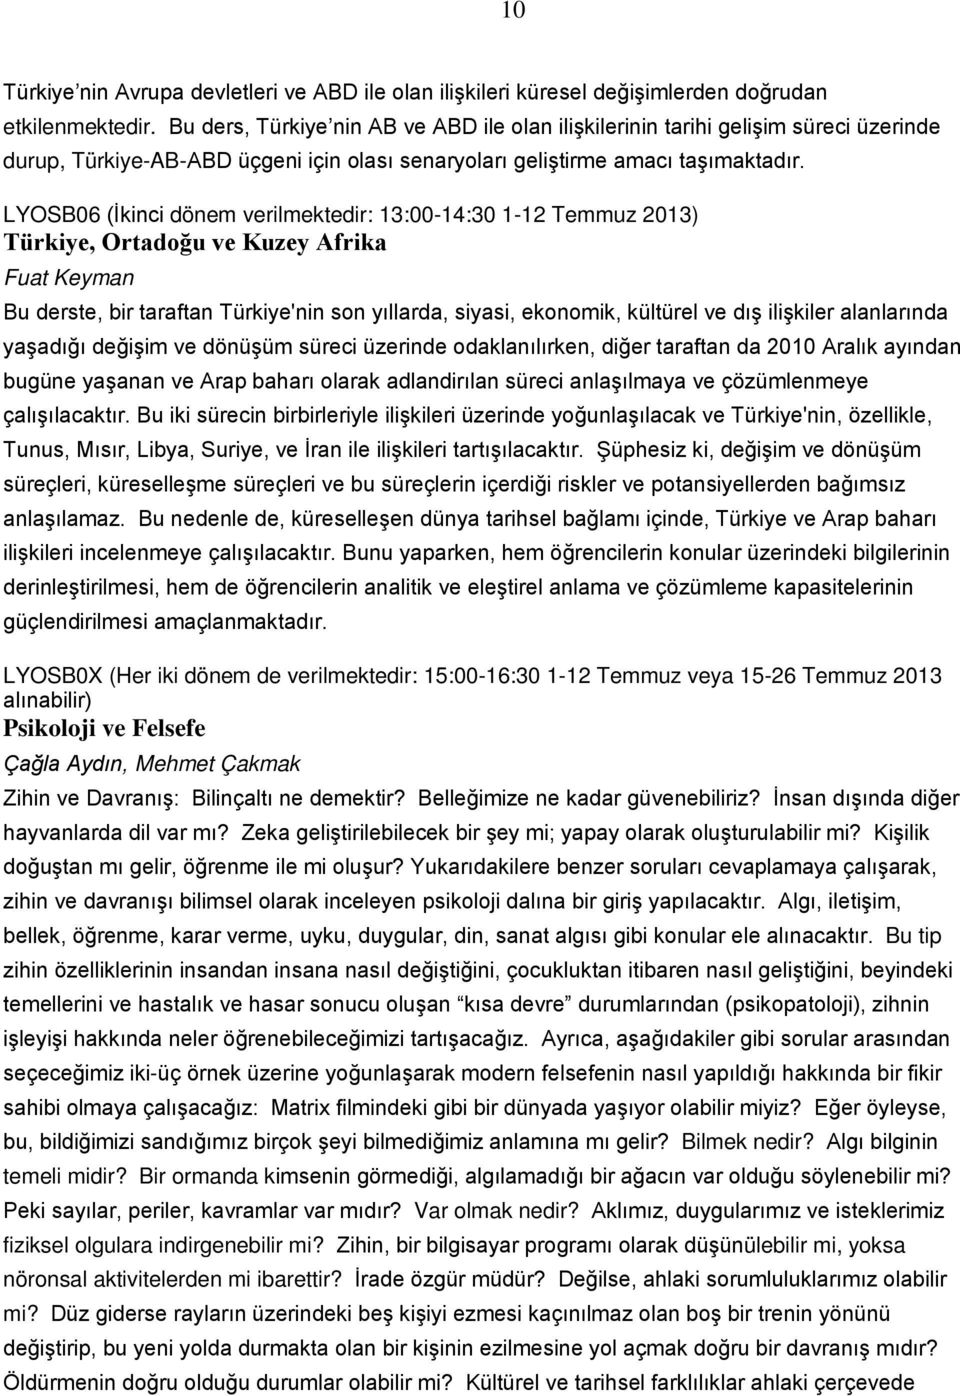 LYOSB06 (İkinci dönem verilmektedir: 13:00-14:30 1-12 Temmuz 2013) Türkiye, Ortadoğu ve Kuzey Afrika Fuat Keyman Bu derste, bir taraftan Türkiye'nin son yıllarda, siyasi, ekonomik, kültürel ve dış